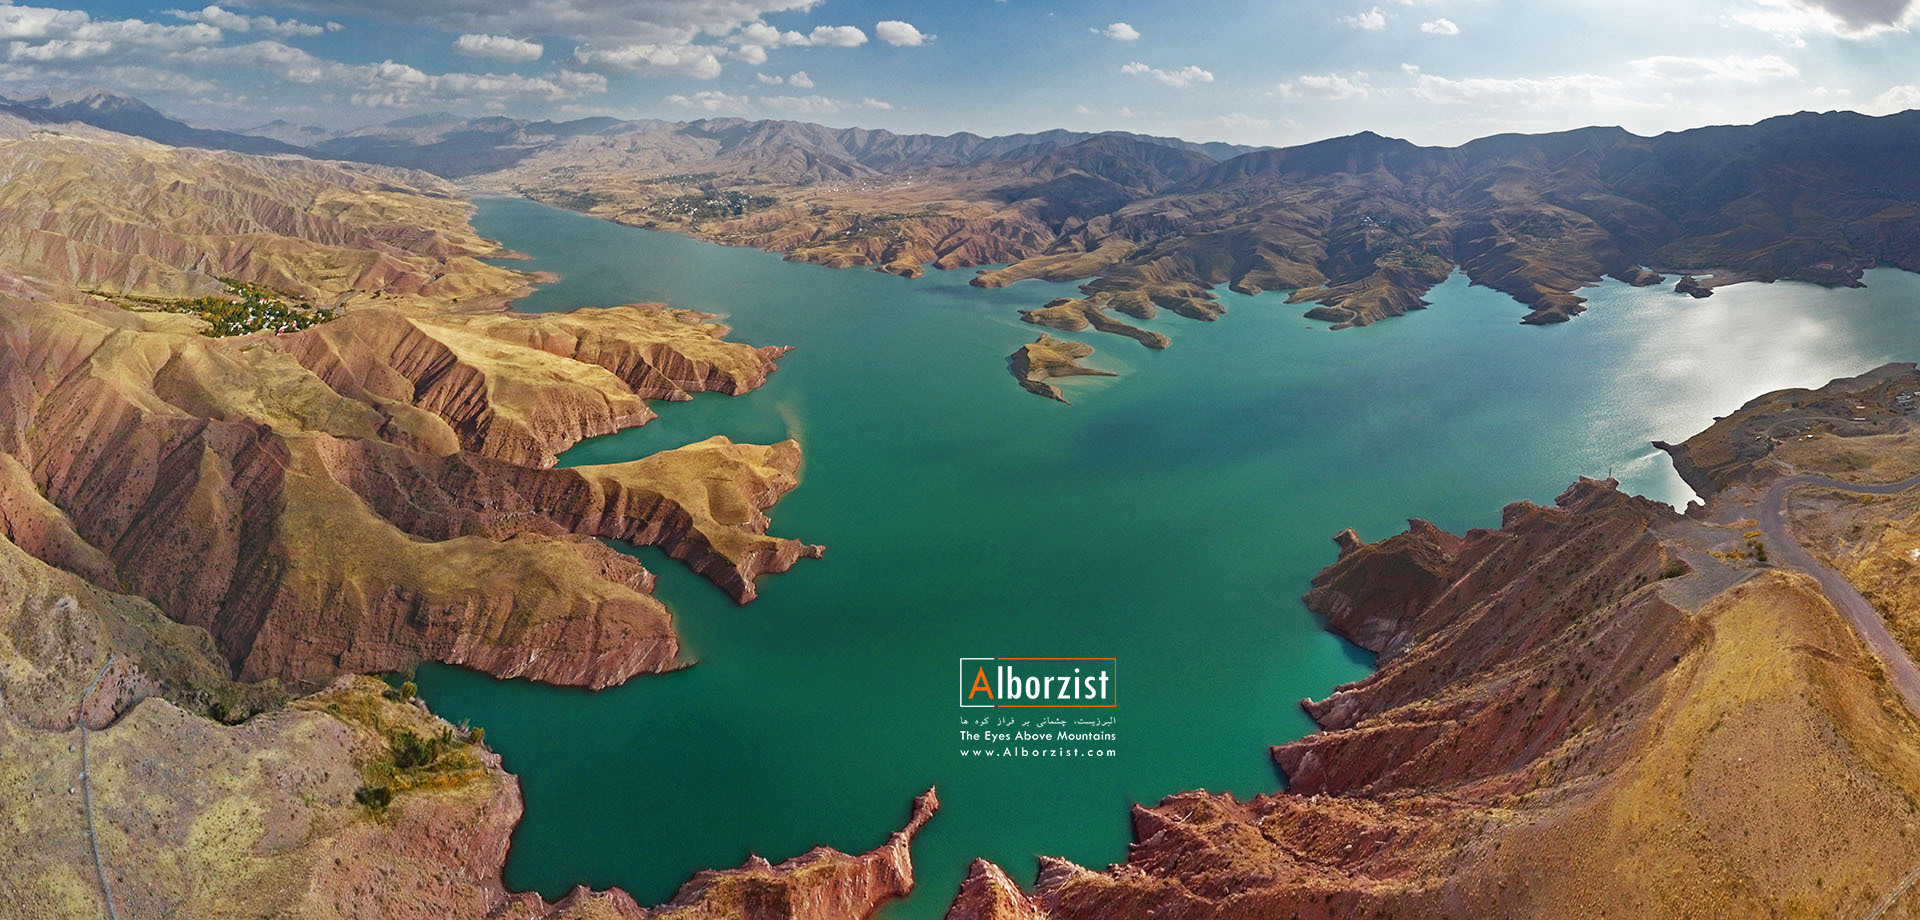  تصویر هوایی دریاچه سد طالقان در کوهستان البرز